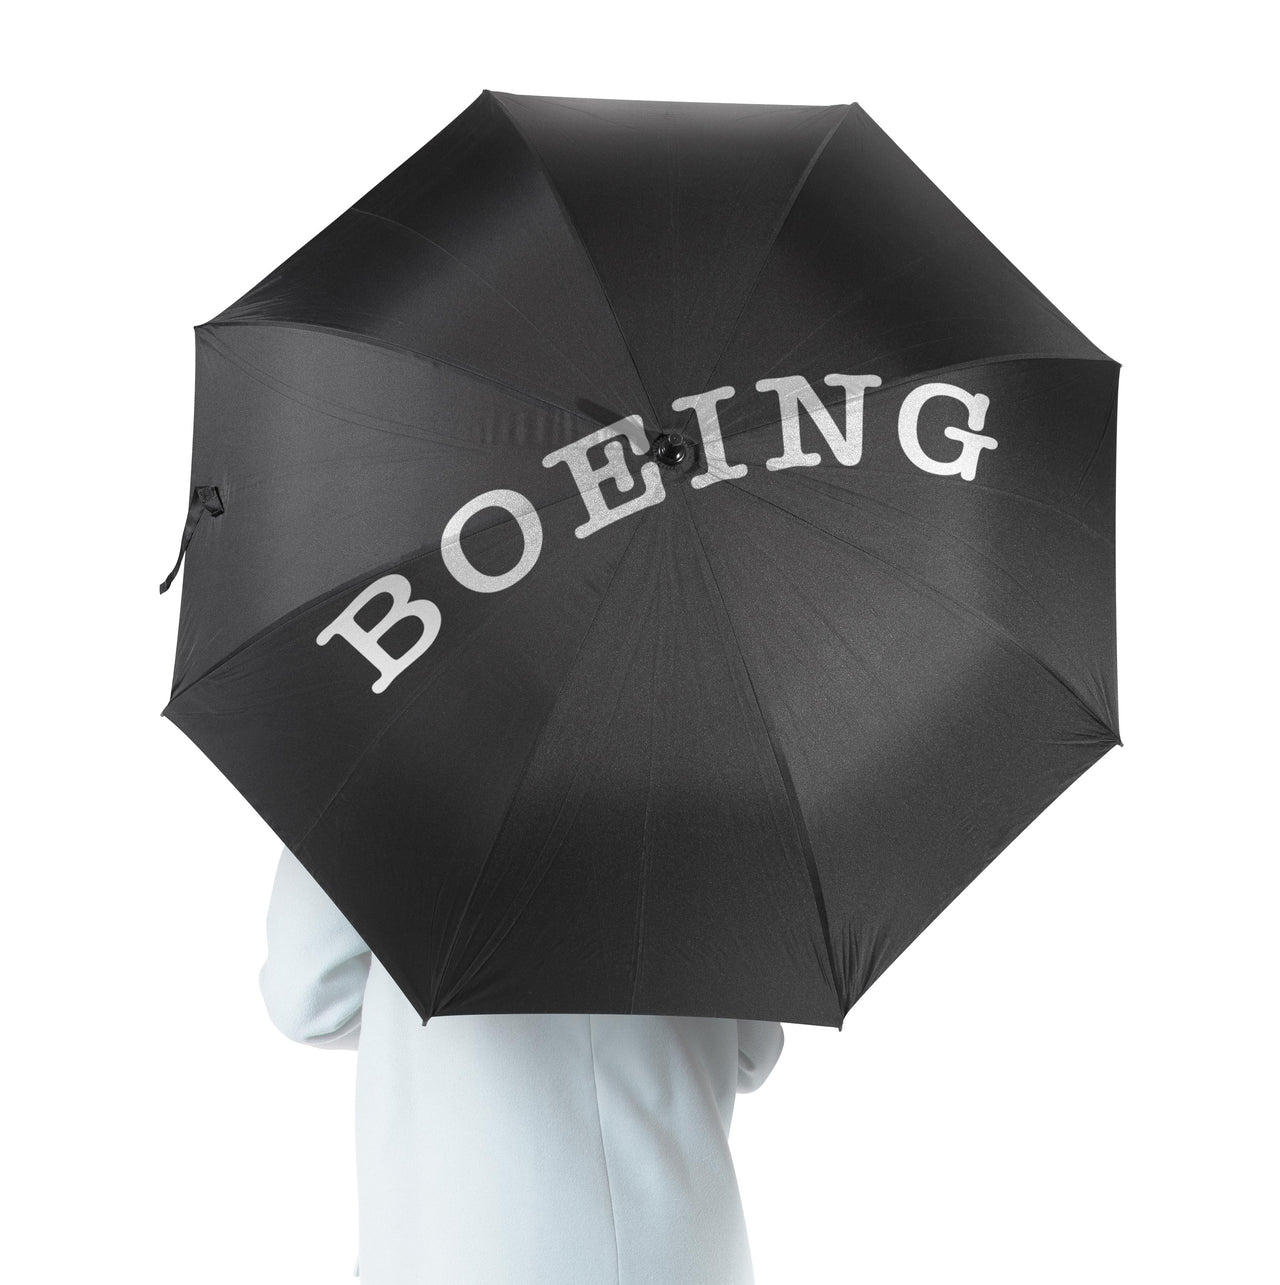 Special BOEING Text Designed Umbrella